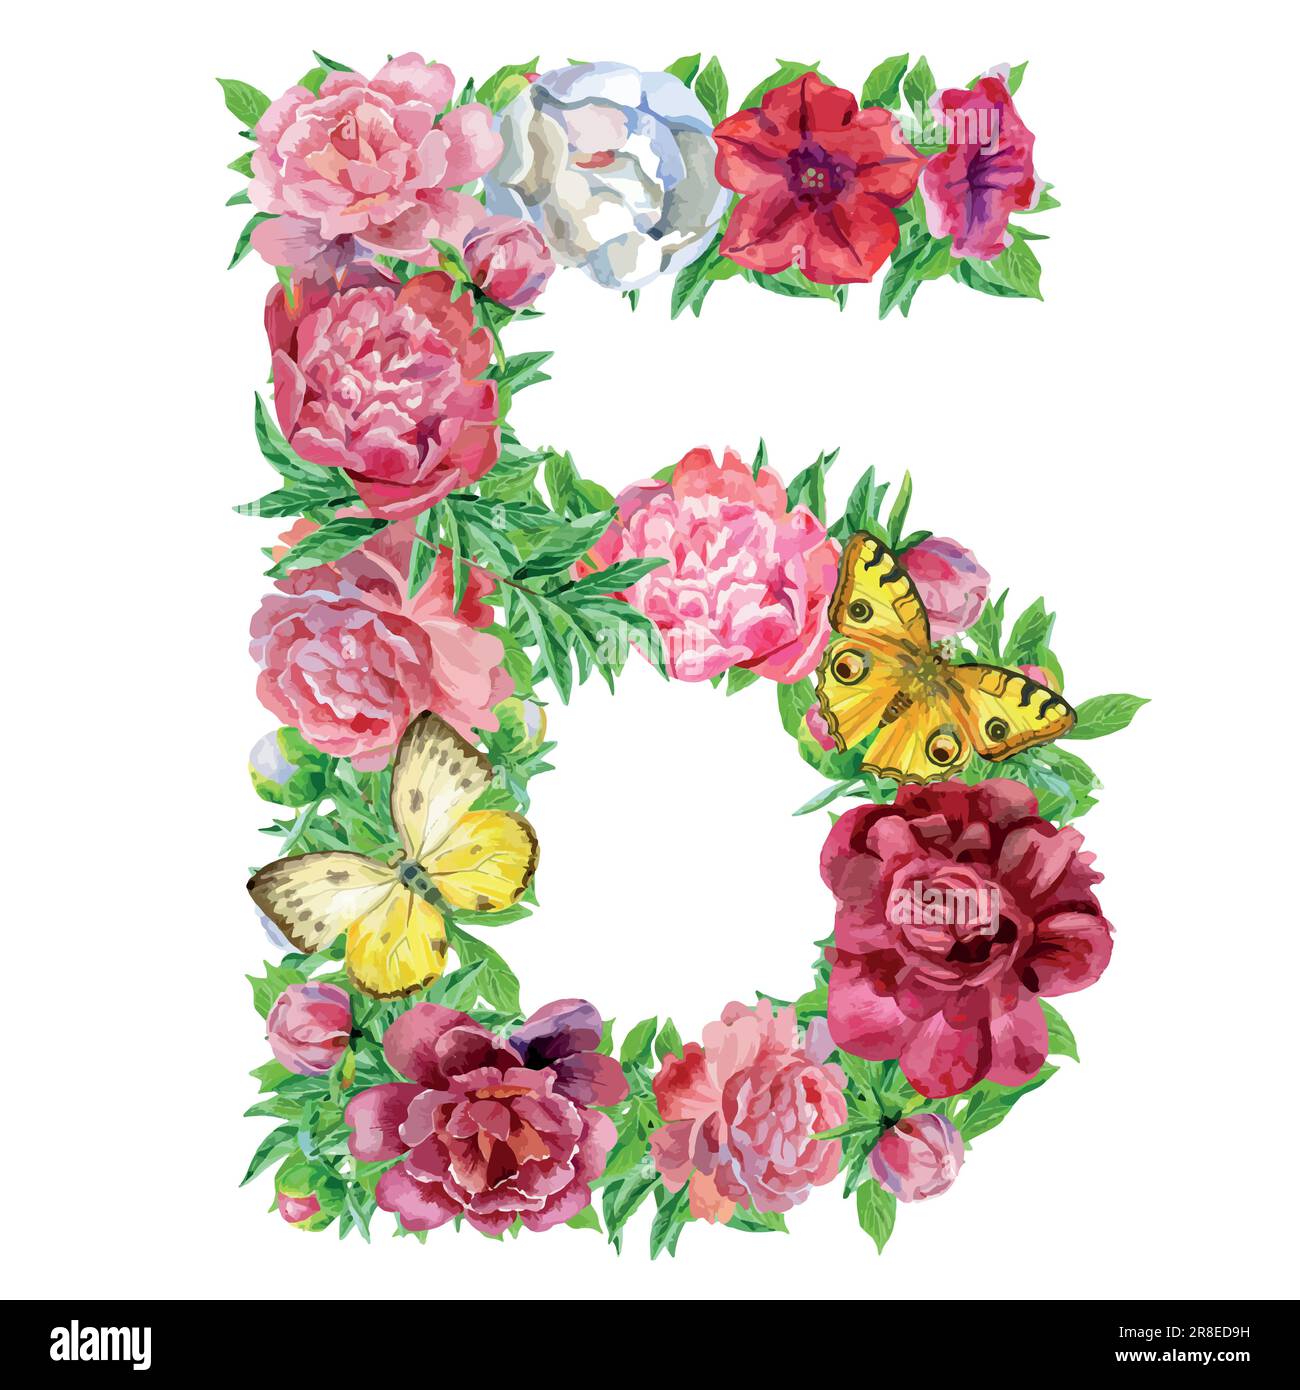 Lettre de fleurs aquarelles, isolée main, dessin de mariage, alphabet cyrillique russe 2 Illustration de Vecteur